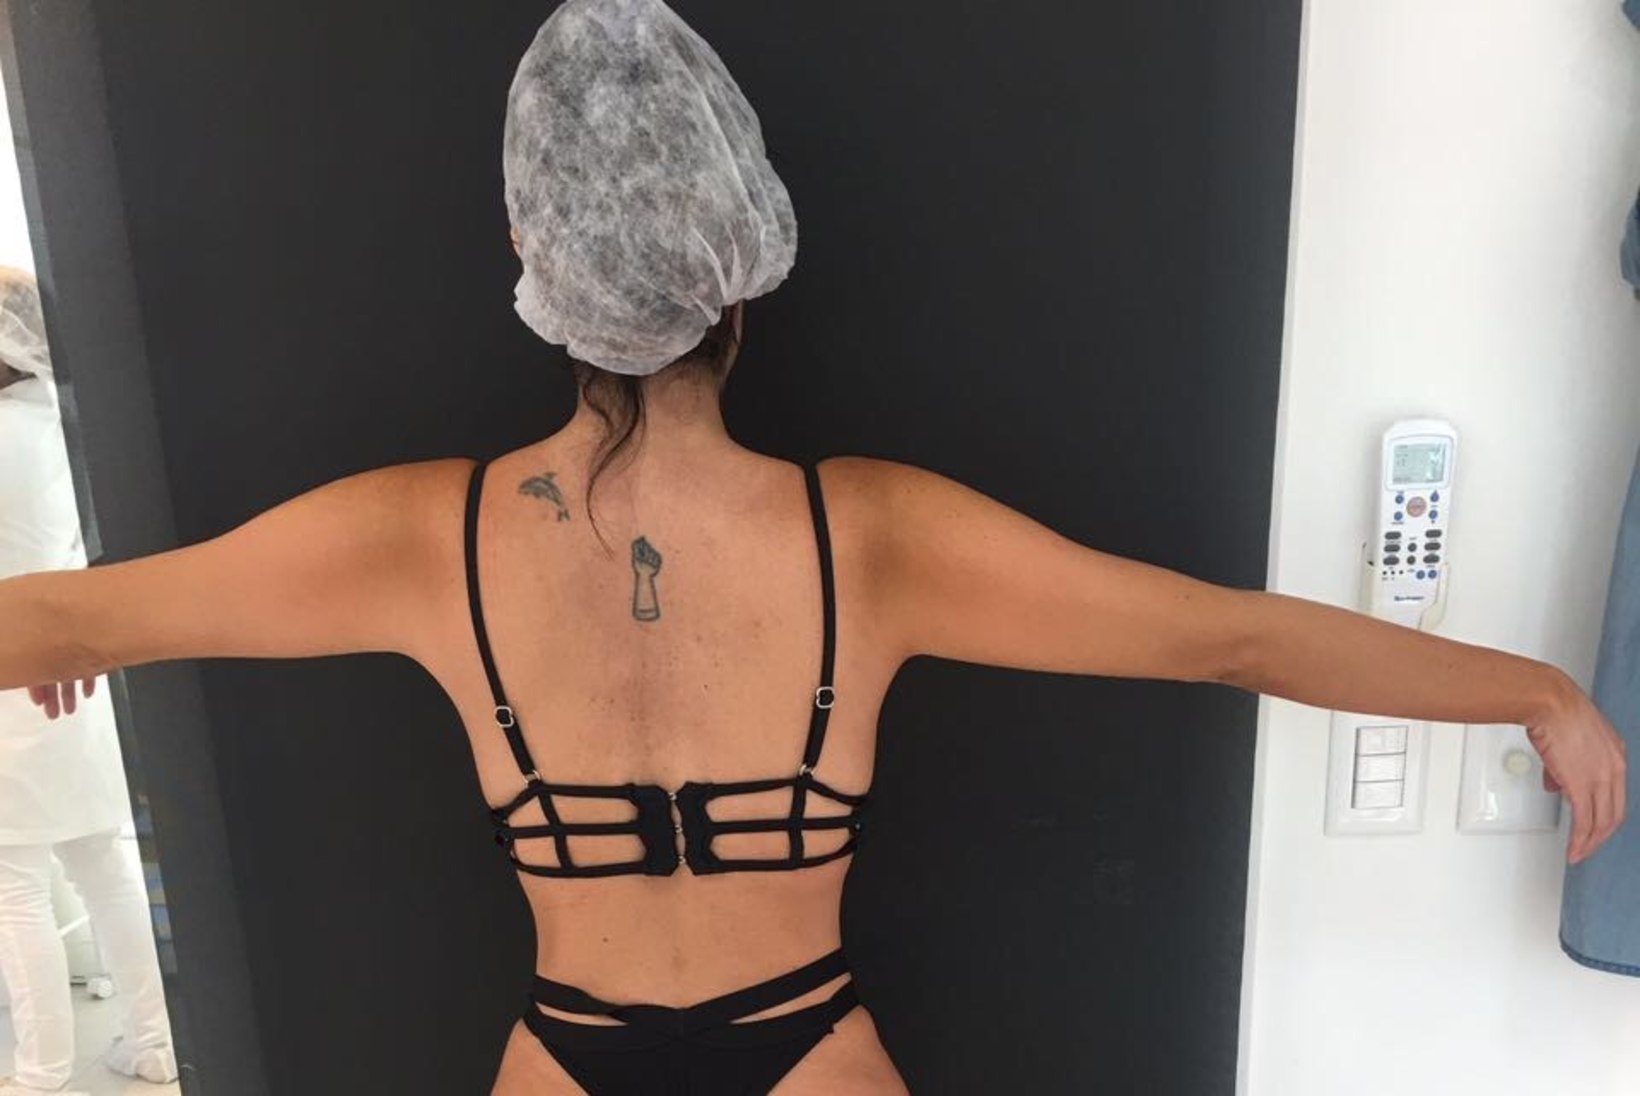 FOTOD | Modell lasi paigaldada tagumikuimplantaadi, et saada endale Kim Kardashiani pepu